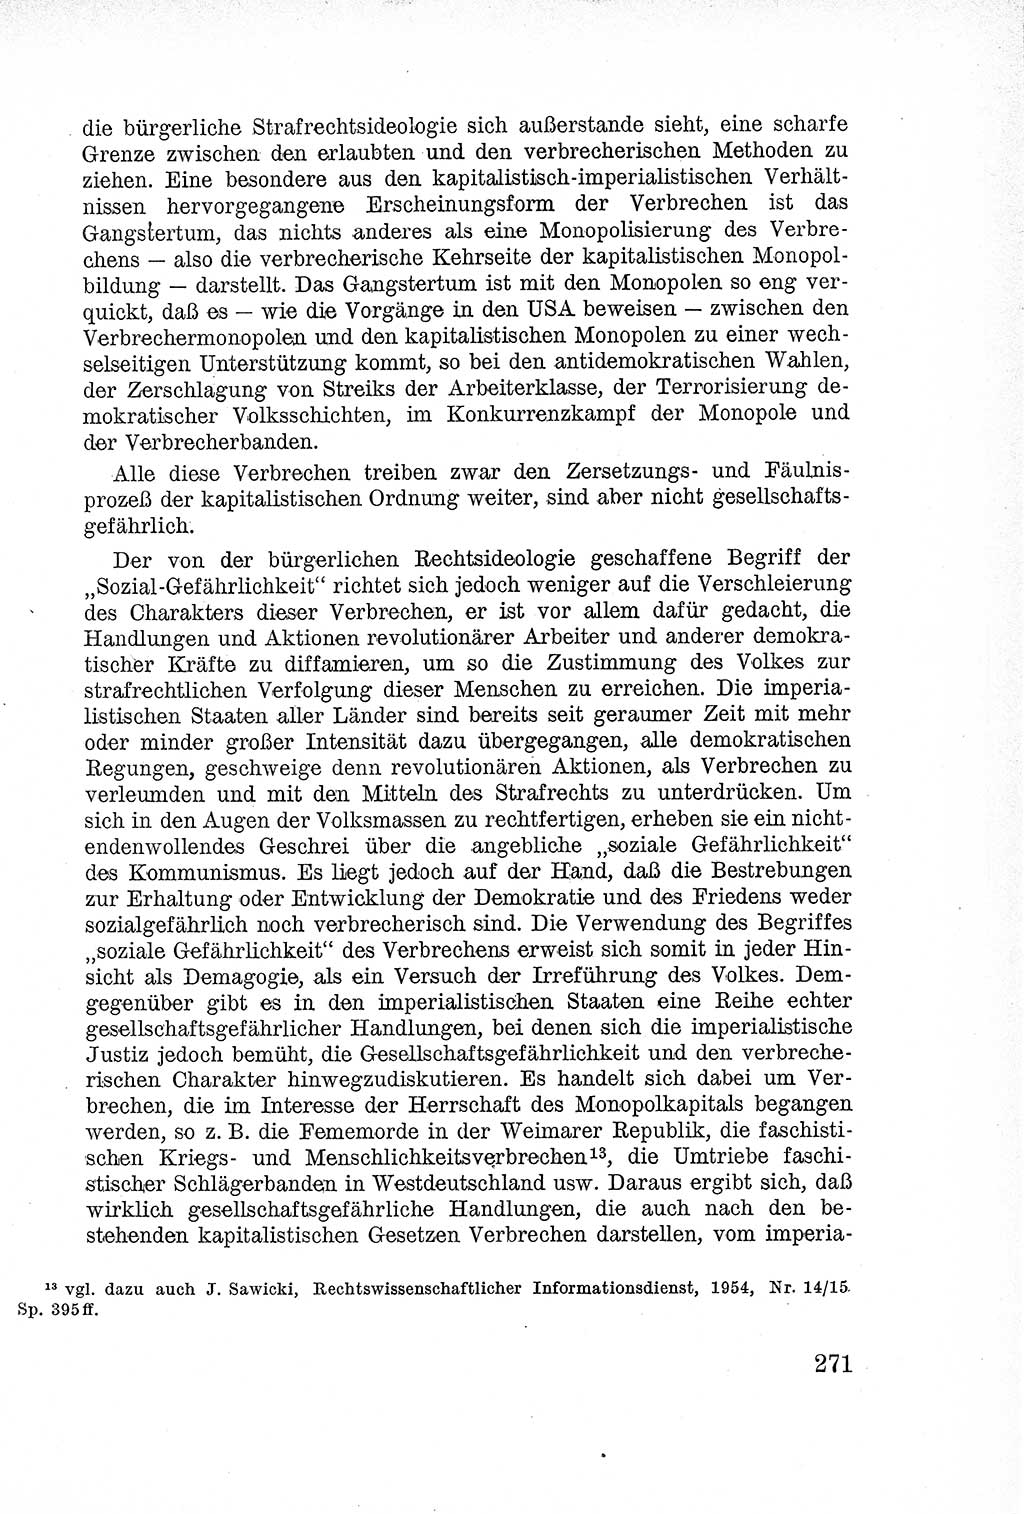 Lehrbuch des Strafrechts der Deutschen Demokratischen Republik (DDR), Allgemeiner Teil 1957, Seite 271 (Lb. Strafr. DDR AT 1957, S. 271)